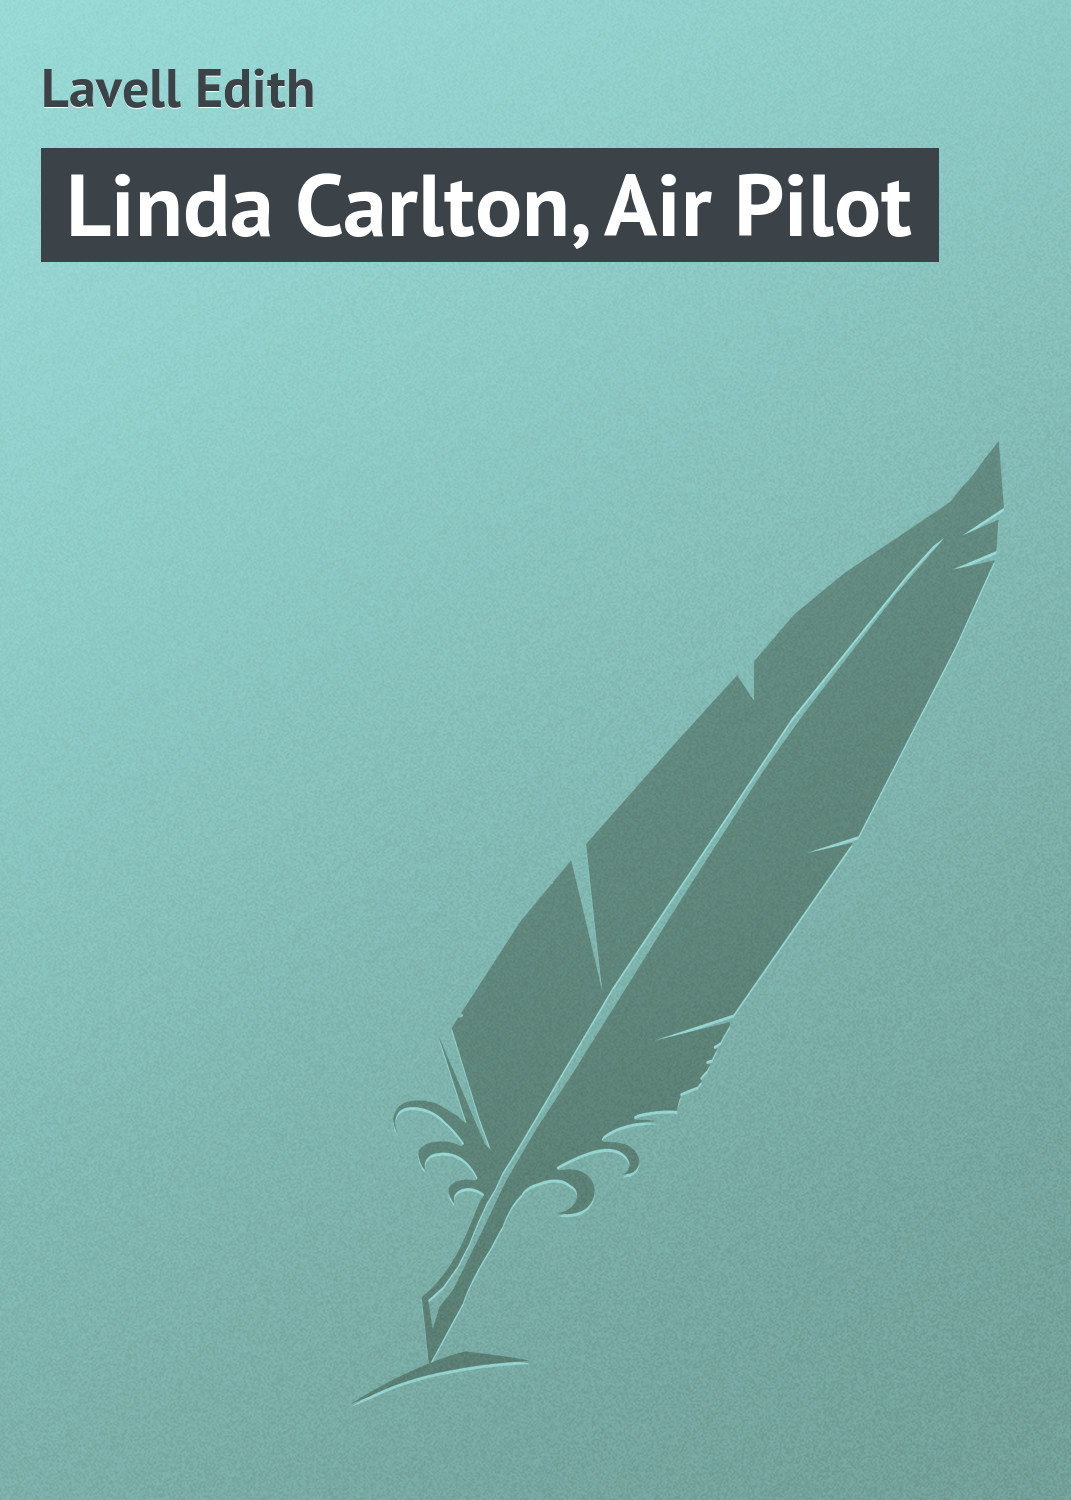 Книга Linda Carlton, Air Pilot из серии , созданная Edith Lavell, может относится к жанру Приключения: прочее, Зарубежная классика. Стоимость электронной книги Linda Carlton, Air Pilot с идентификатором 23166763 составляет 5.99 руб.